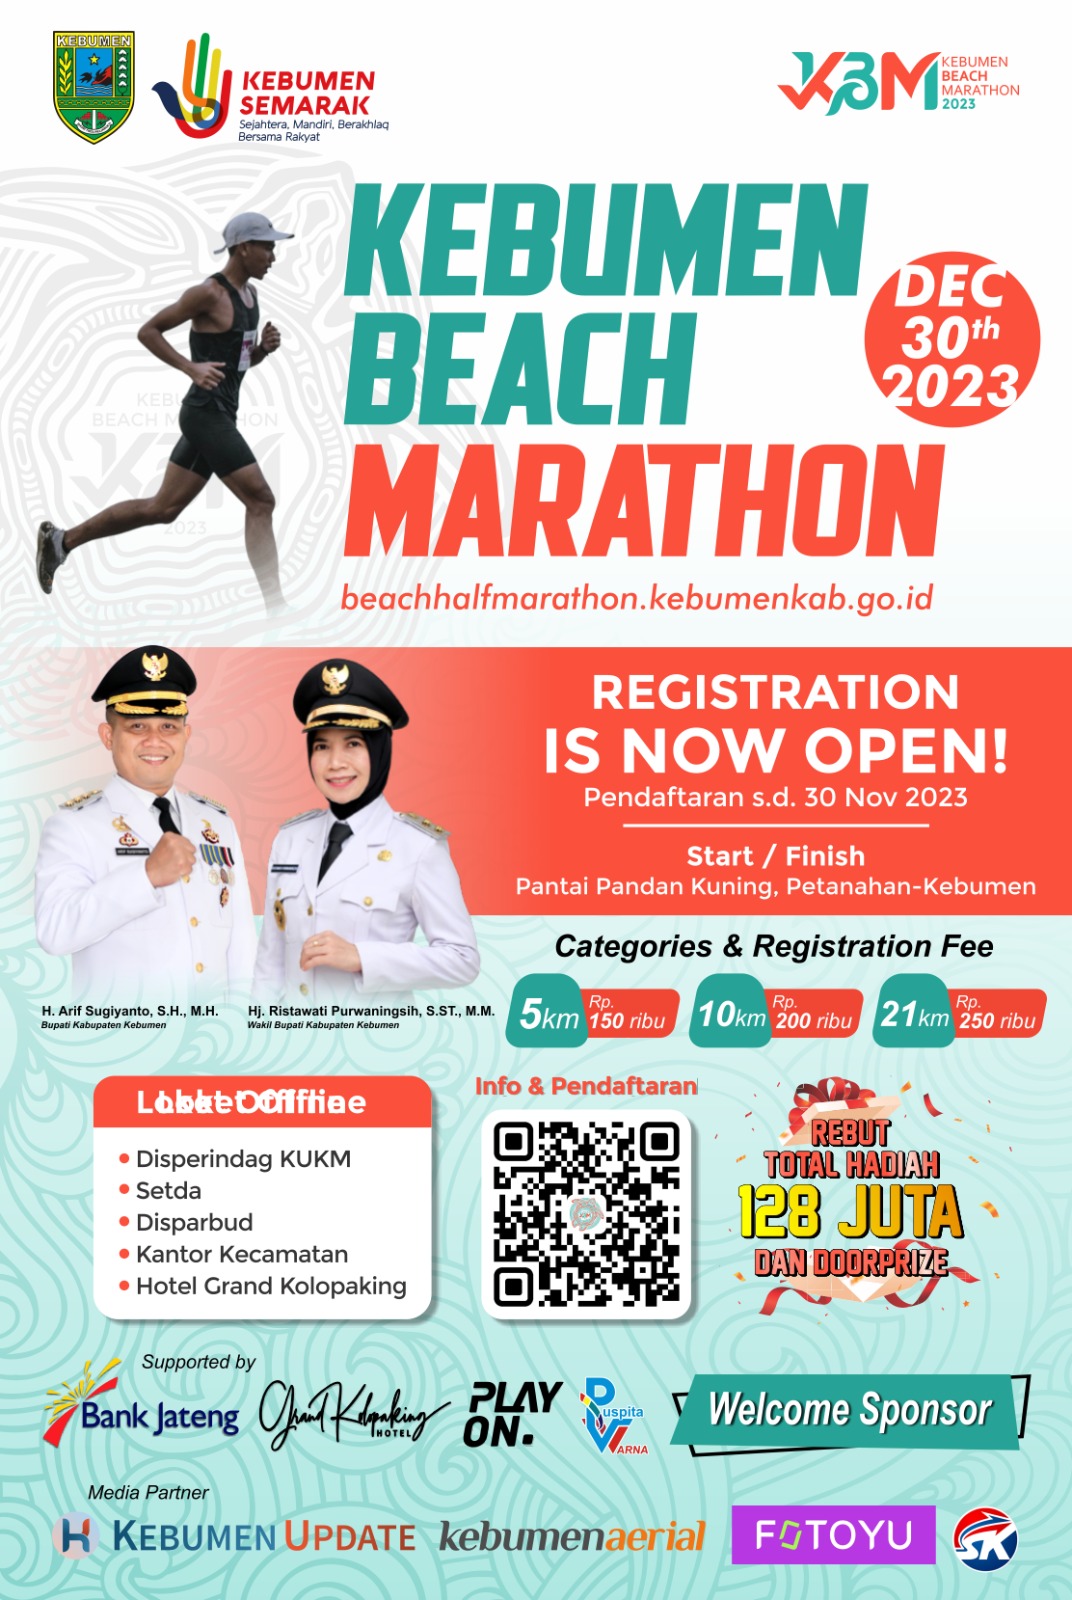 Beach Marathon